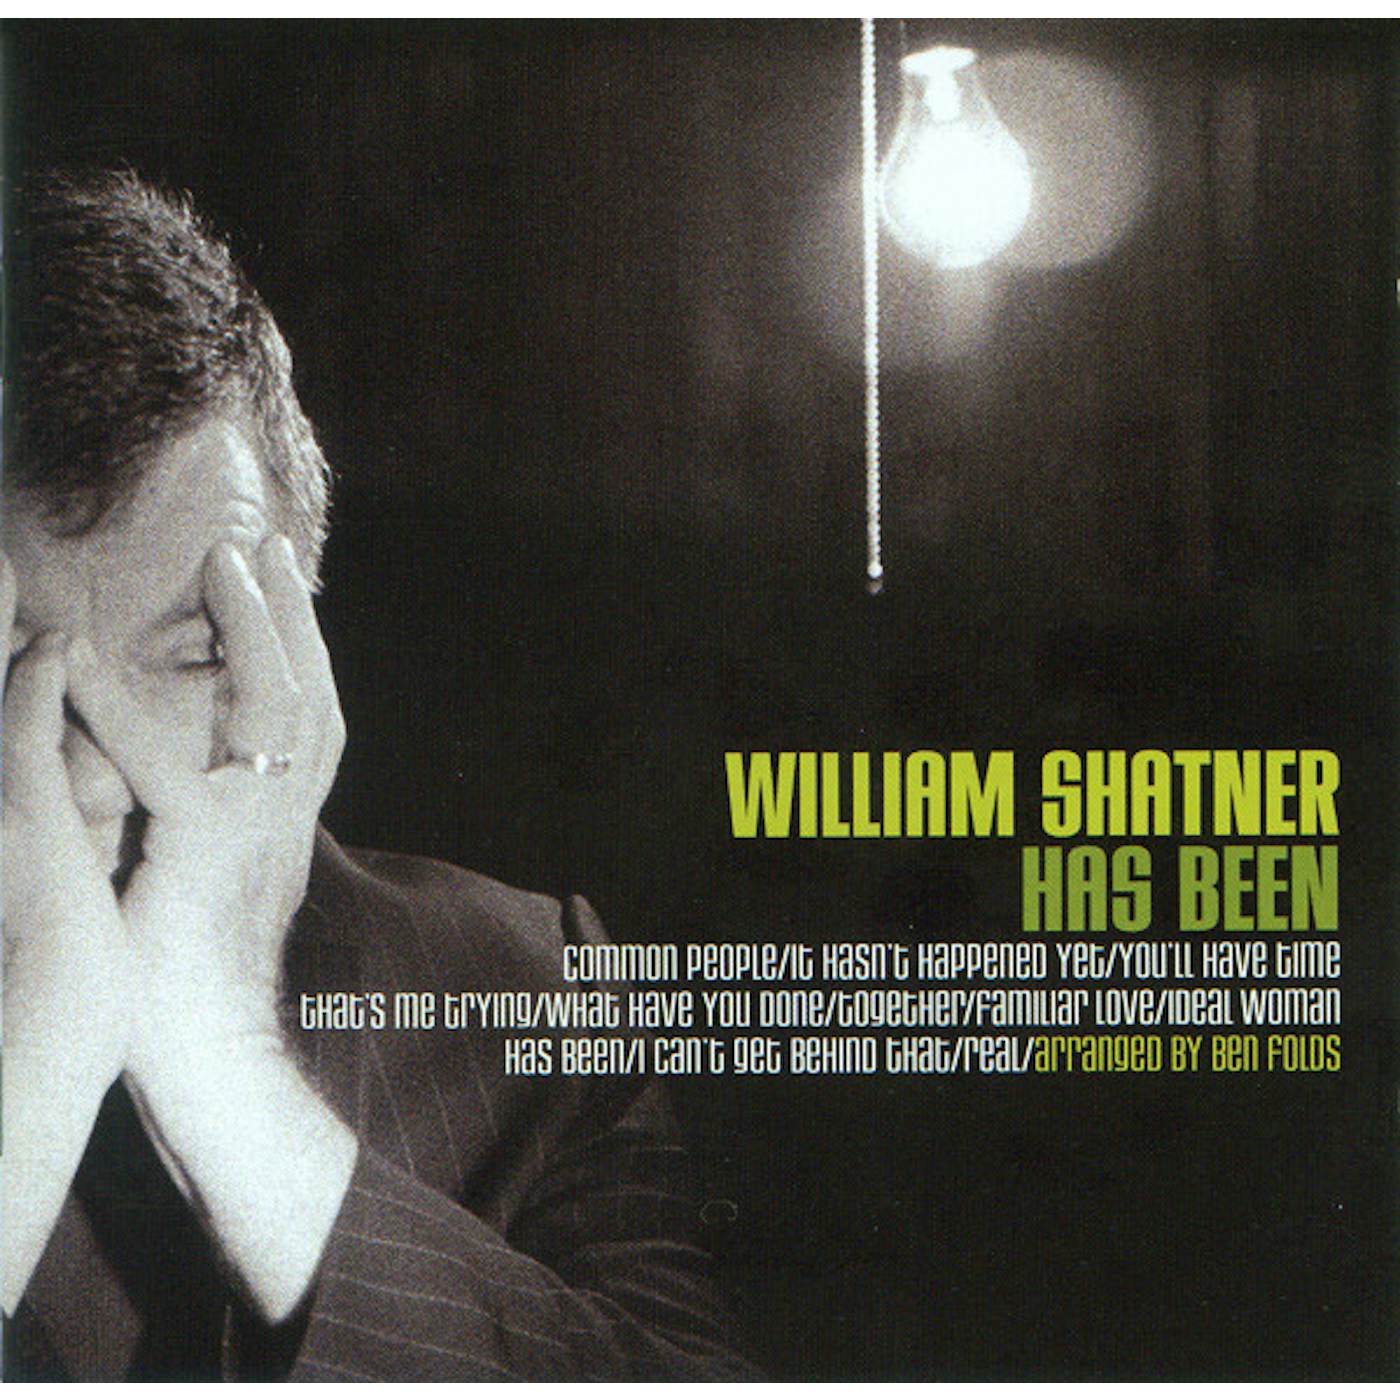 William Shatner Has Been Vinyl Record